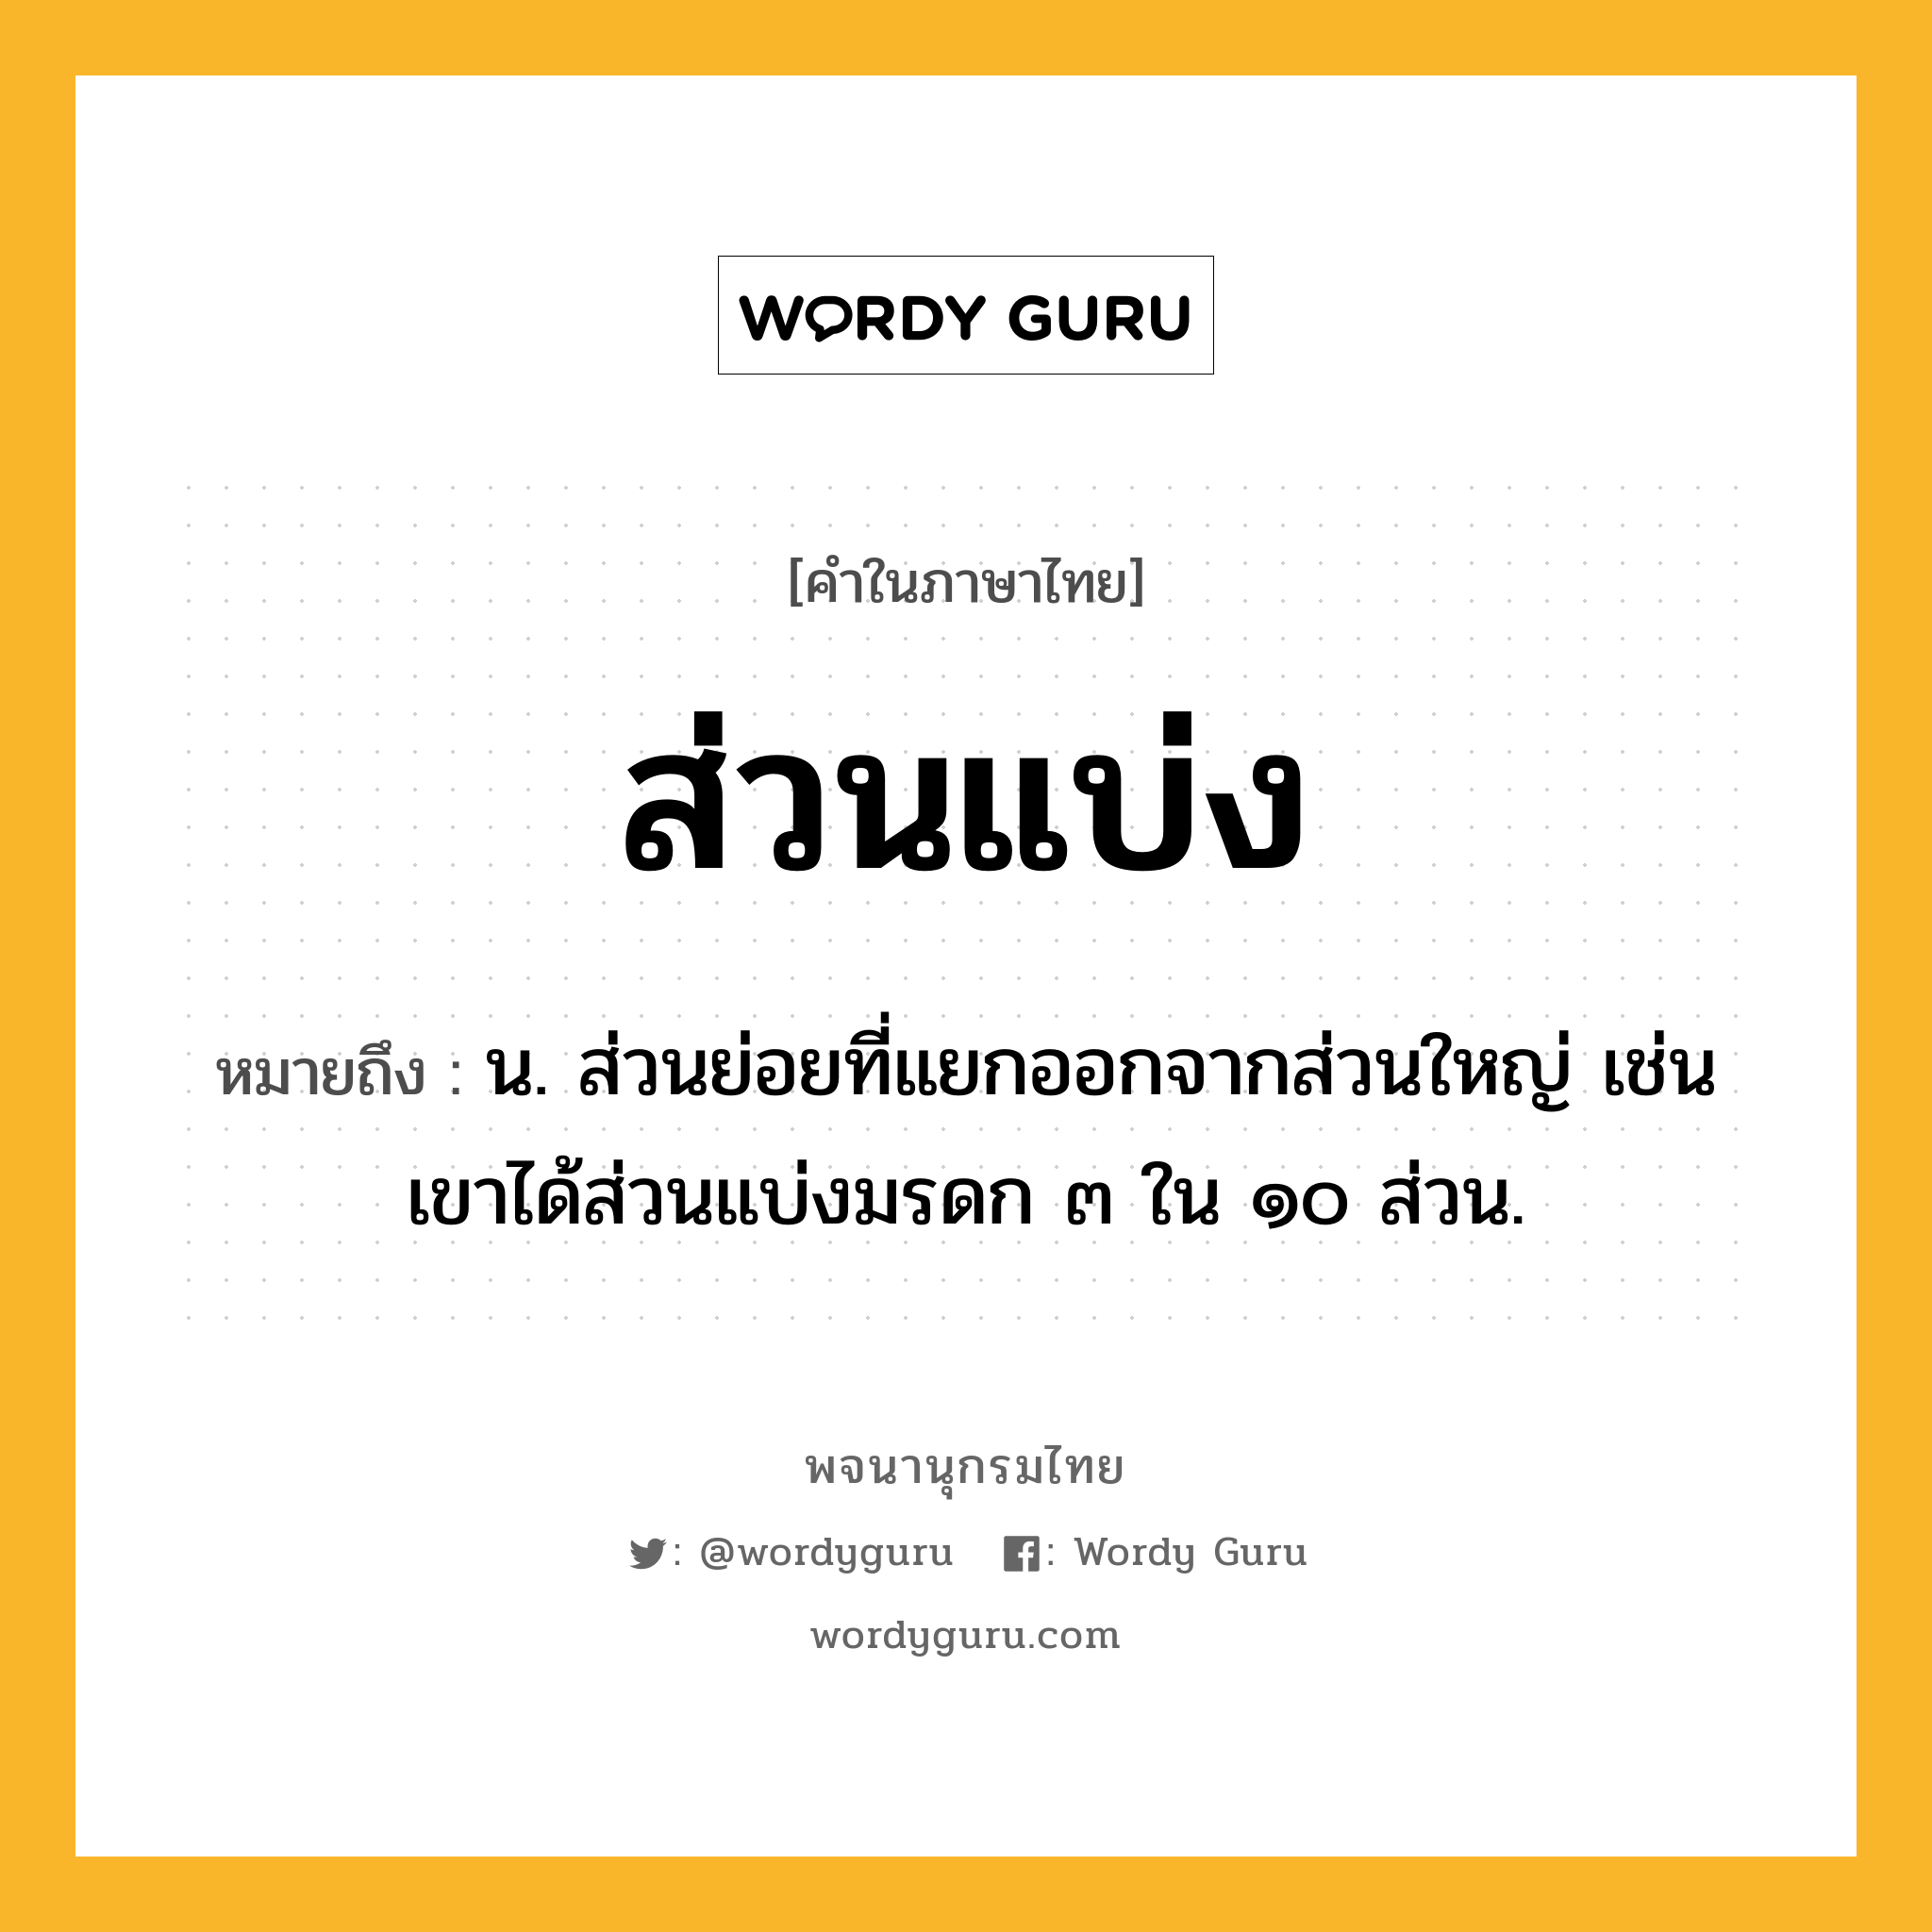 ส่วนแบ่ง หมายถึงอะไร?, คำในภาษาไทย ส่วนแบ่ง หมายถึง น. ส่วนย่อยที่แยกออกจากส่วนใหญ่ เช่น เขาได้ส่วนแบ่งมรดก ๓ ใน ๑๐ ส่วน.